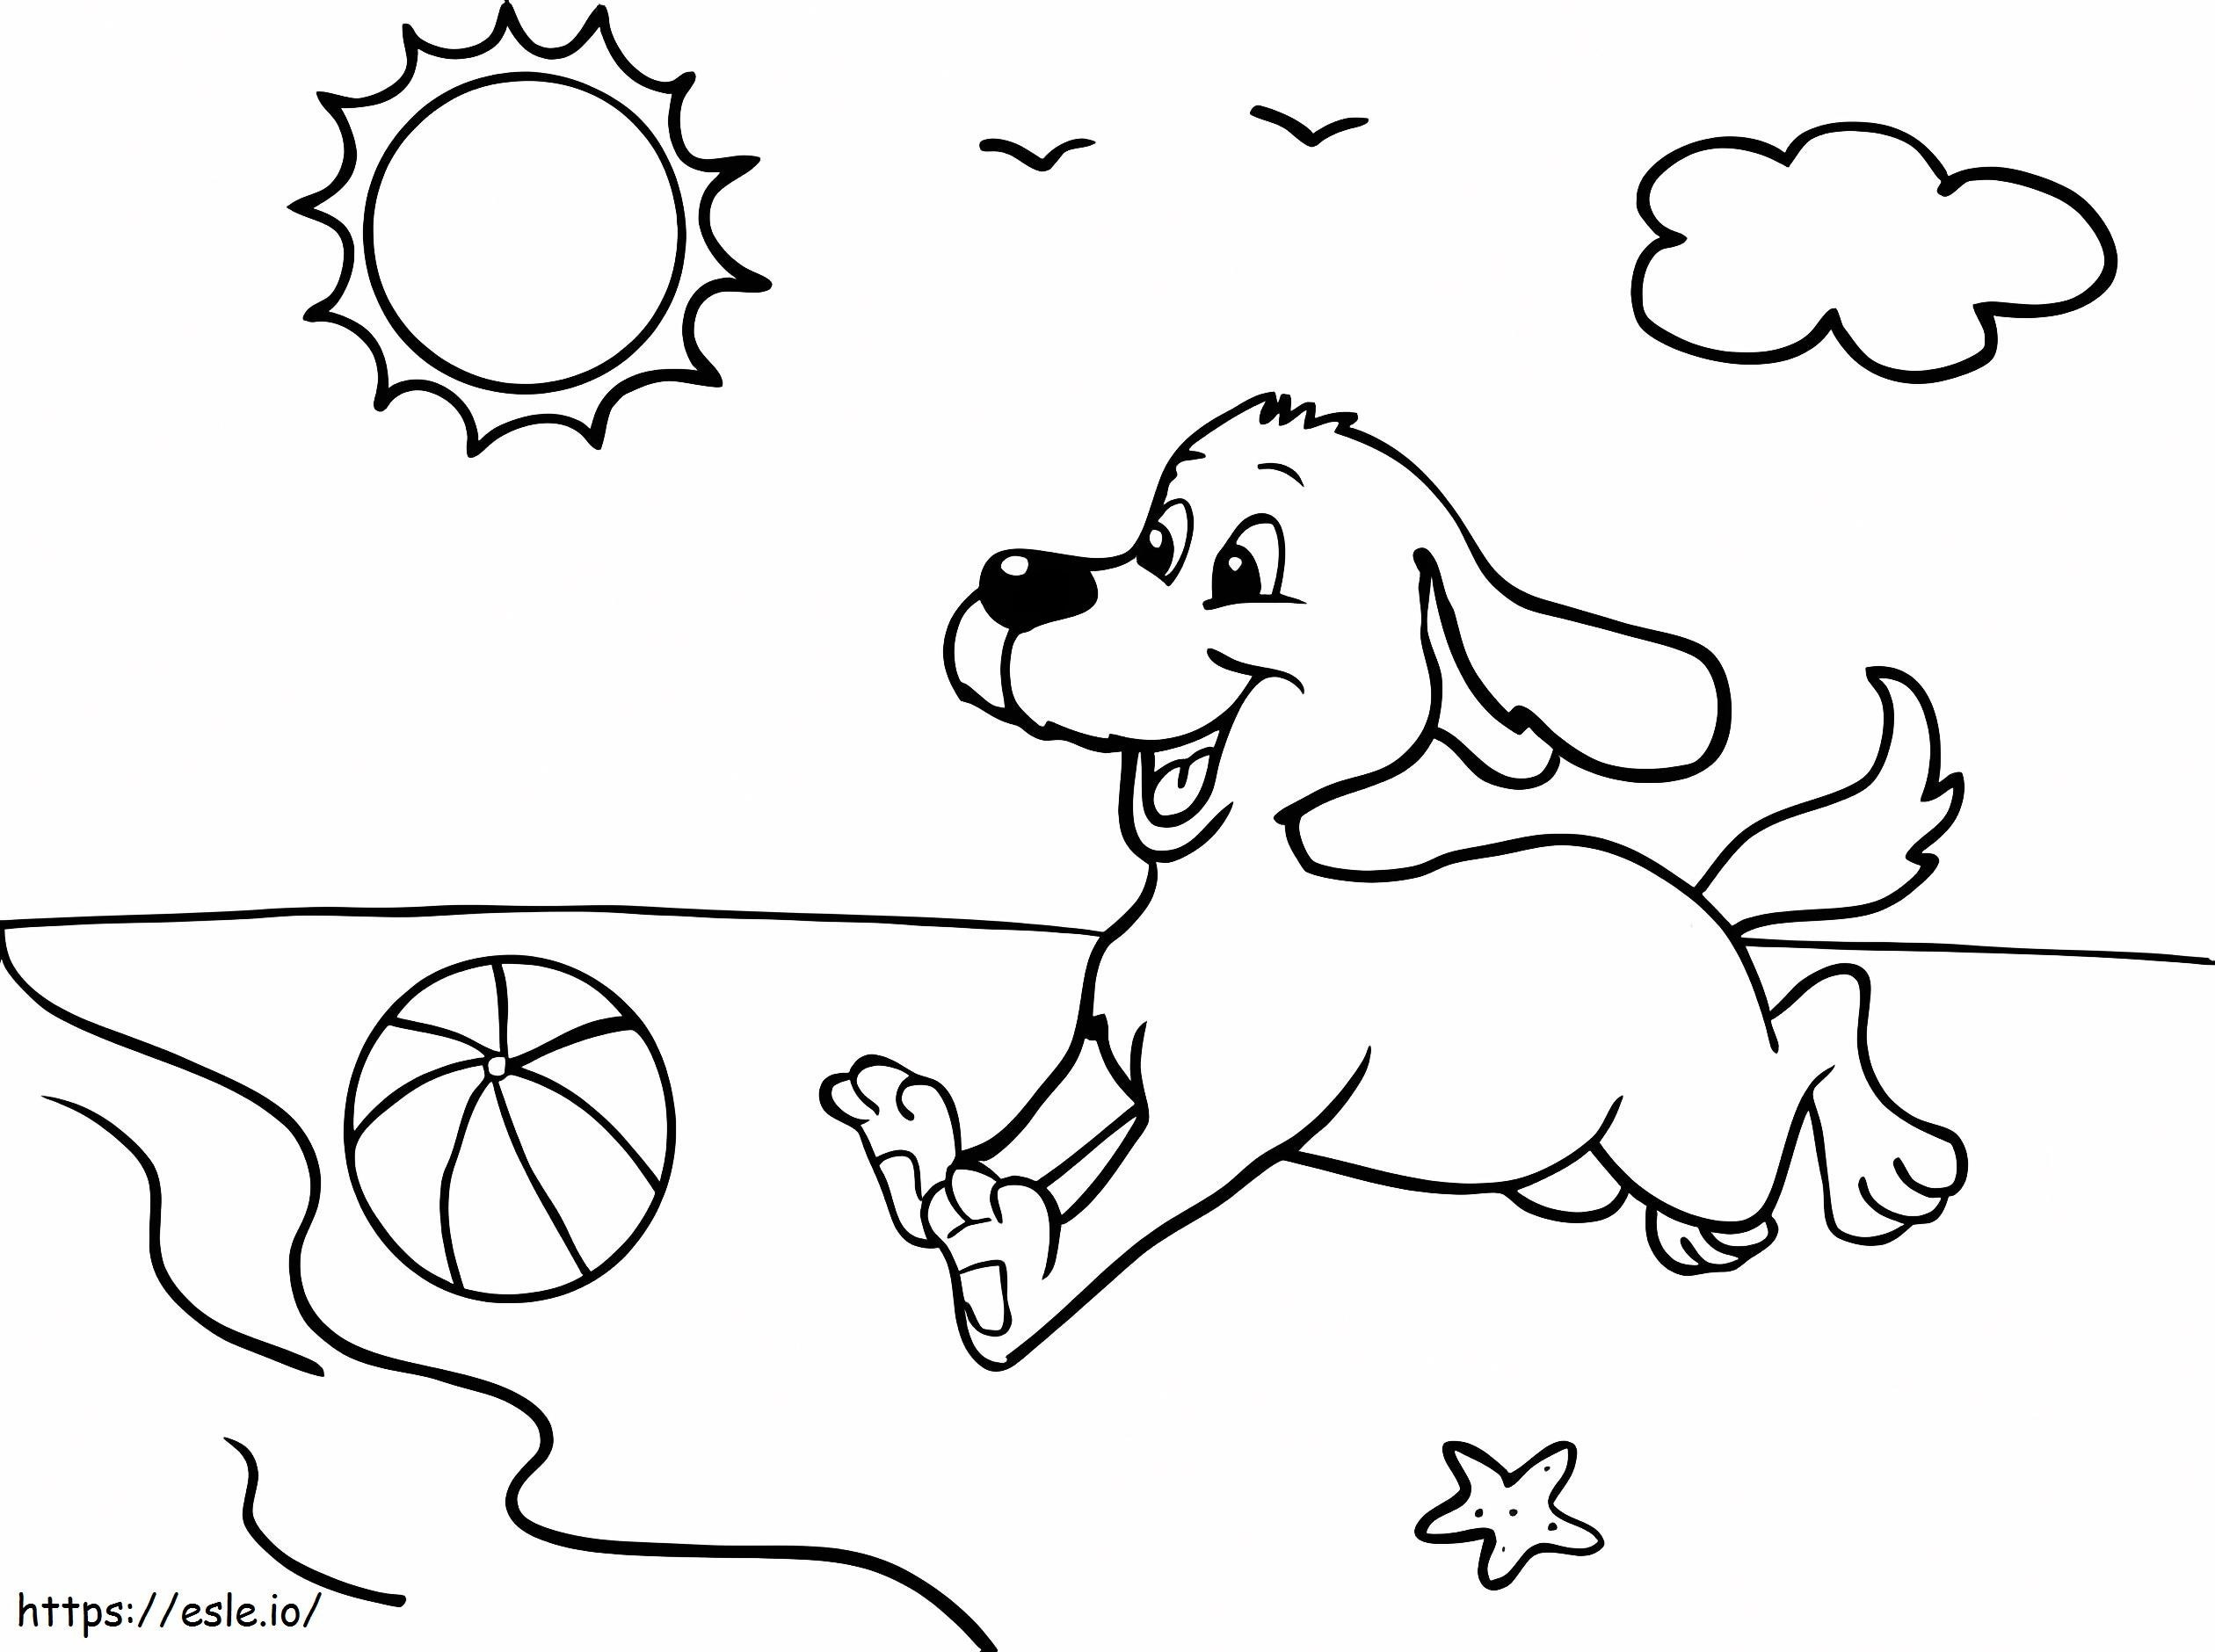 Cachorro brincando com bola na praia para colorir